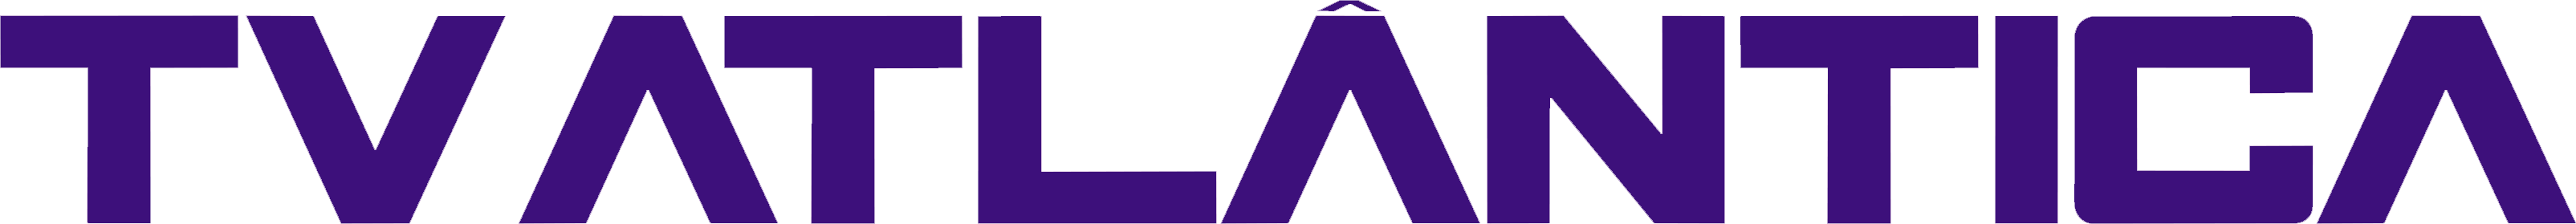 Logo da TV Atlântica.